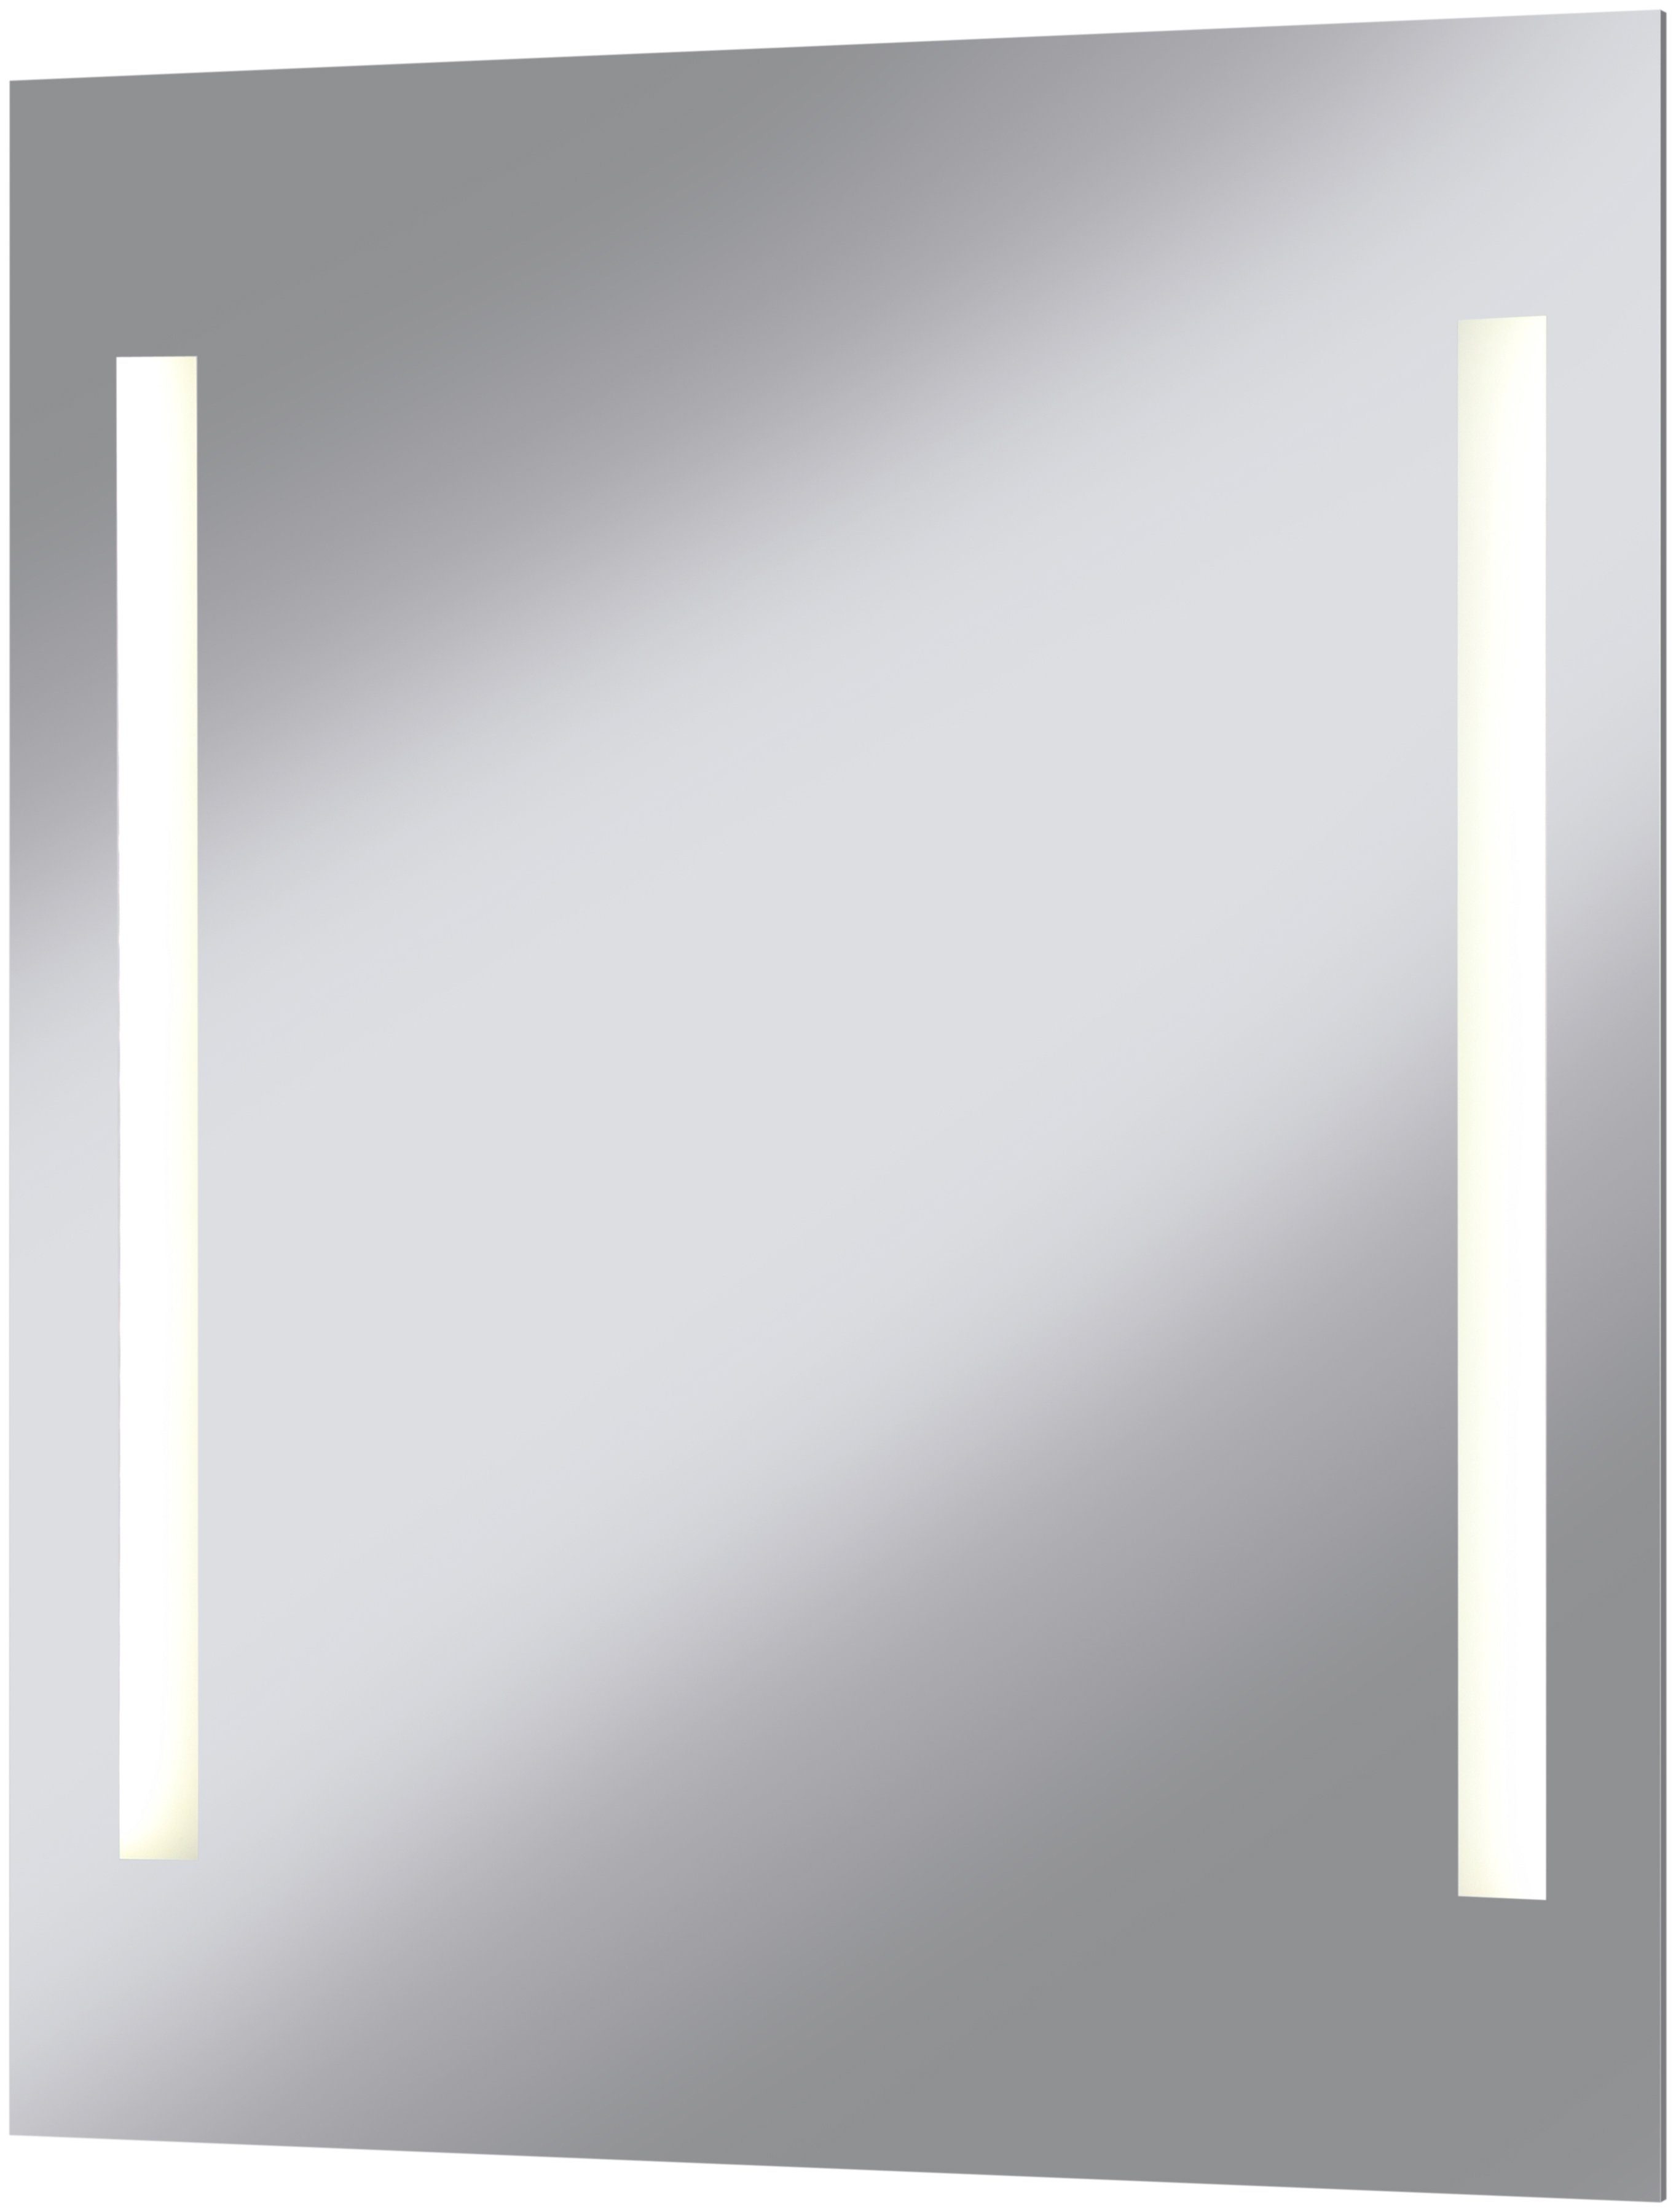 Erfgenaam Duiker regeren welltime Led-lichtspiegel Miami 60 x 70 cm online shop | OTTO